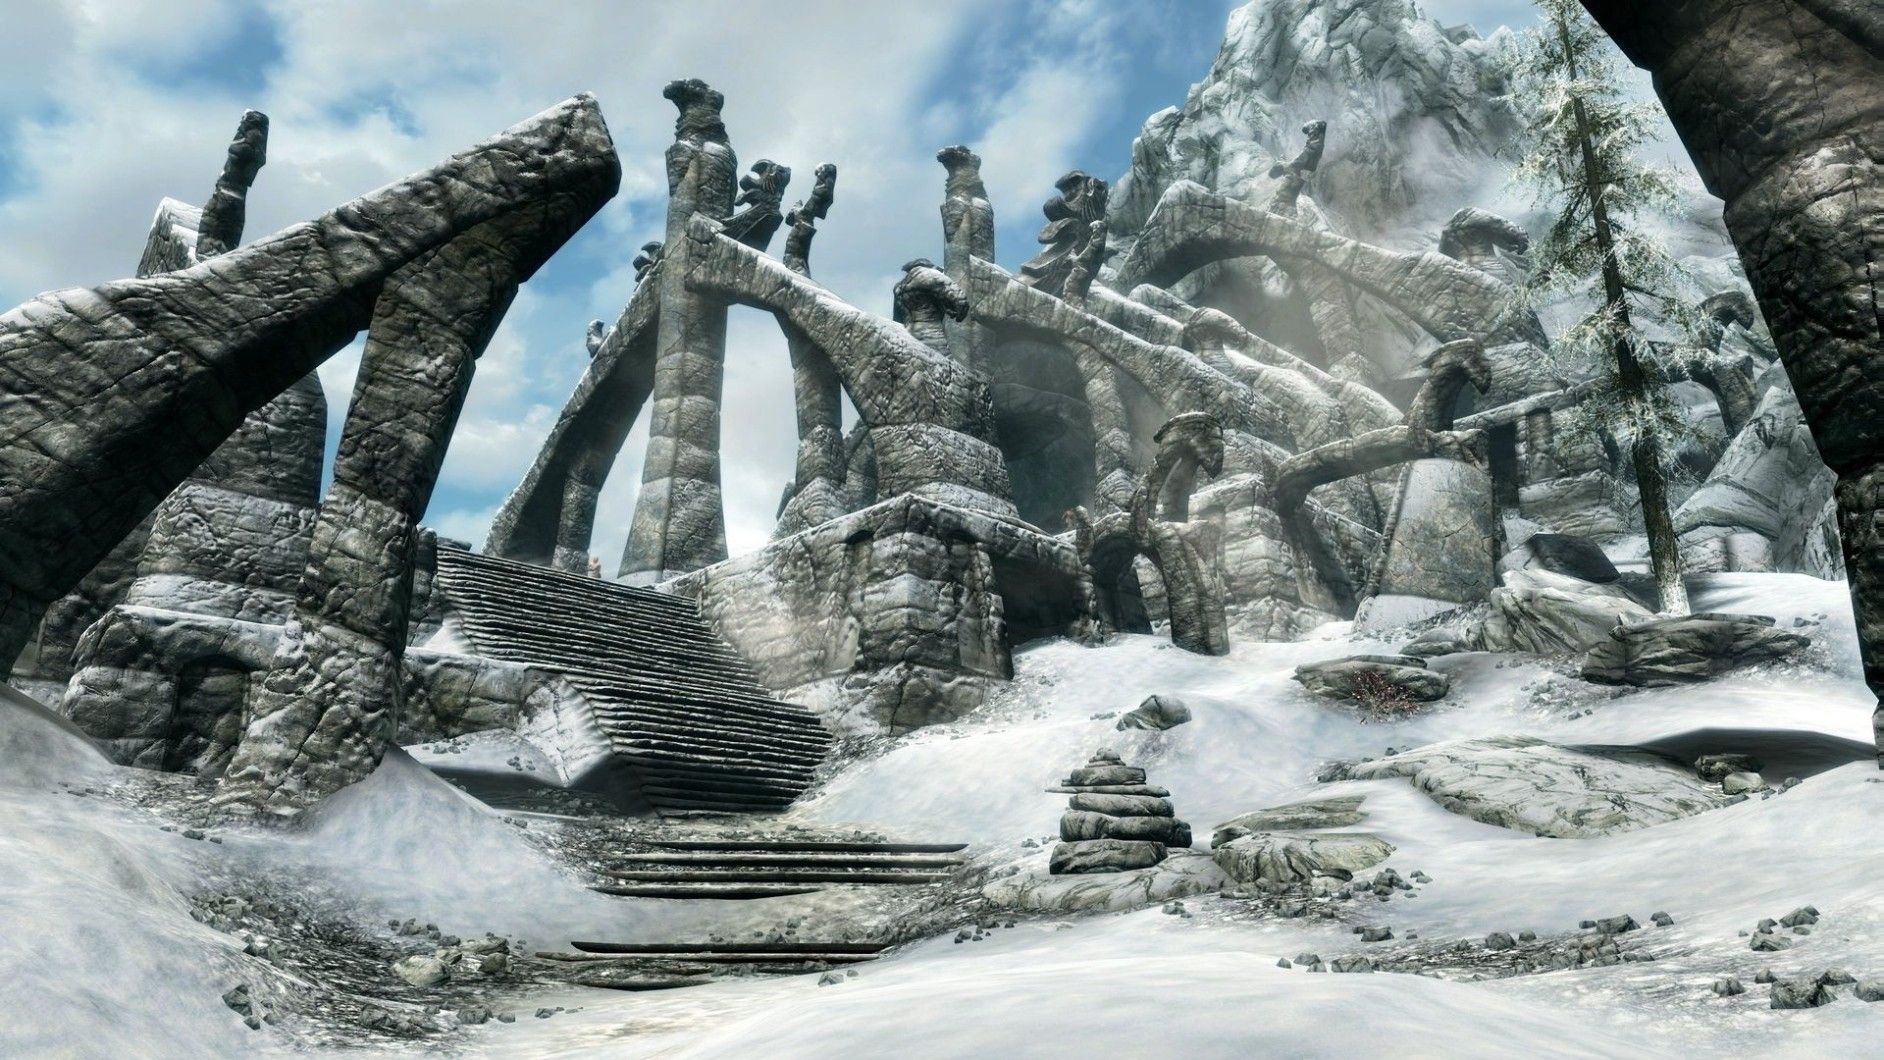 АНОНСЫ, ВИДЕО И СКРИНШОТЫ Купить аккаунт The Elder Scrolls 5 Skyrim 🎮 [STEAM] на Origin-Sell.com